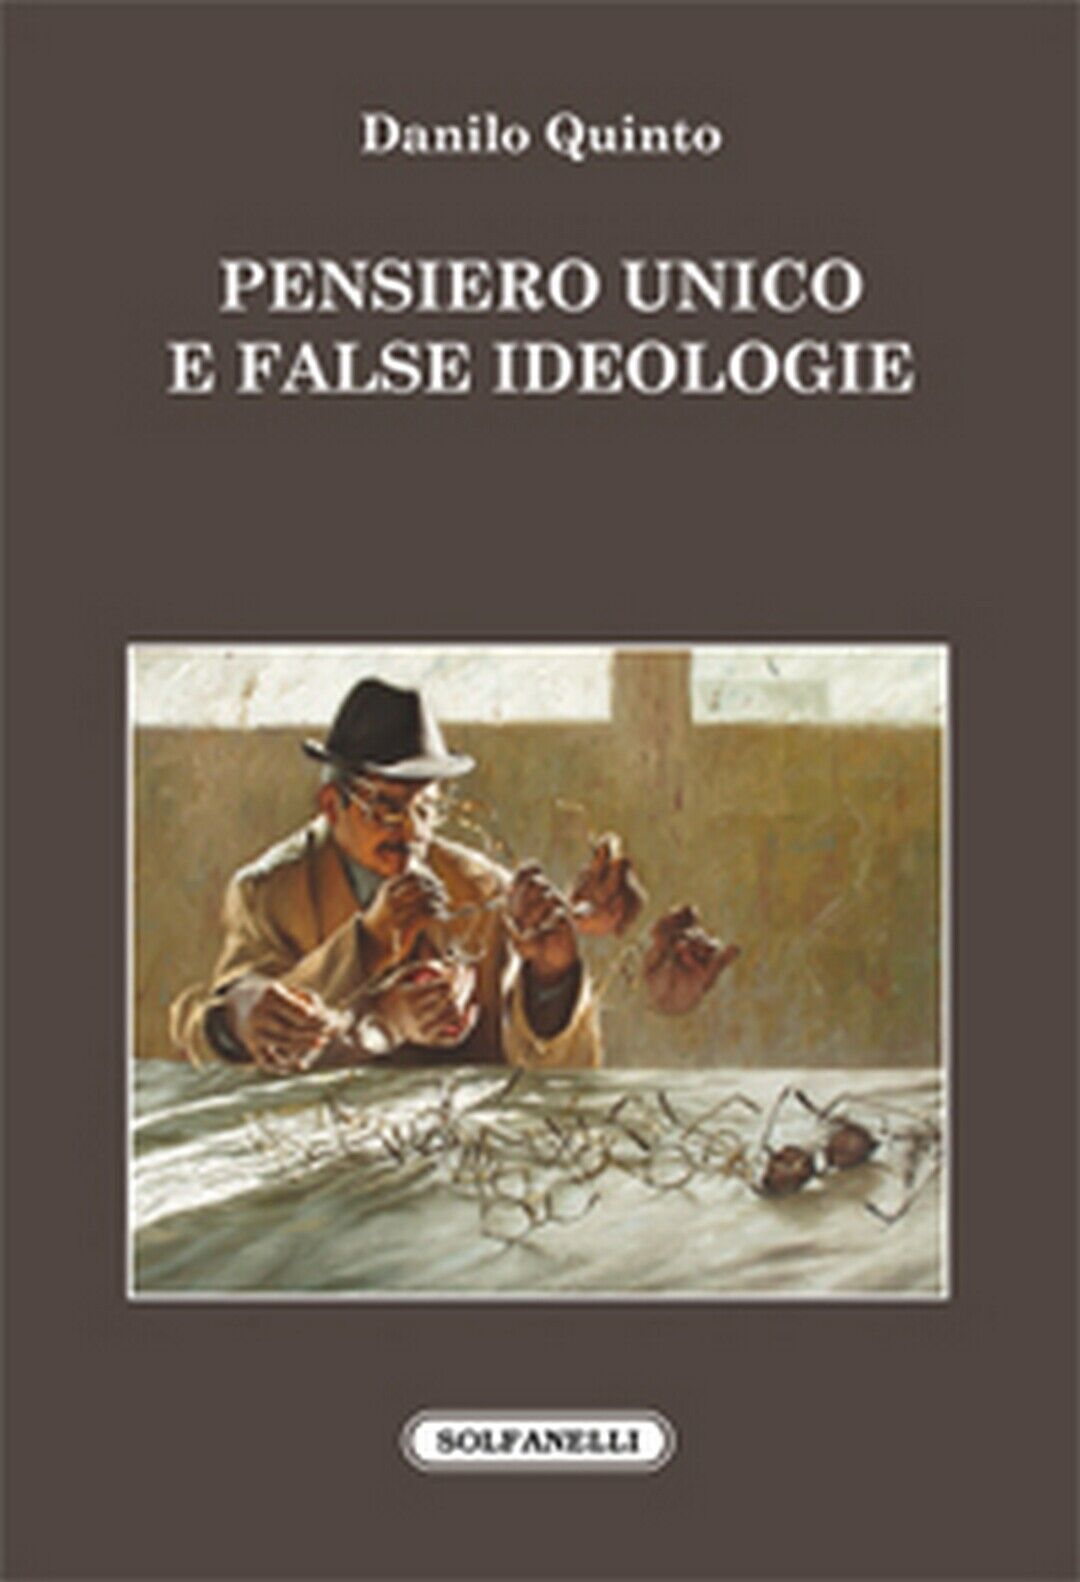 PENSIERO UNICO E FALSE IDEOLOGIE  di Danilo Quinto,  Solfanelli Edizioni